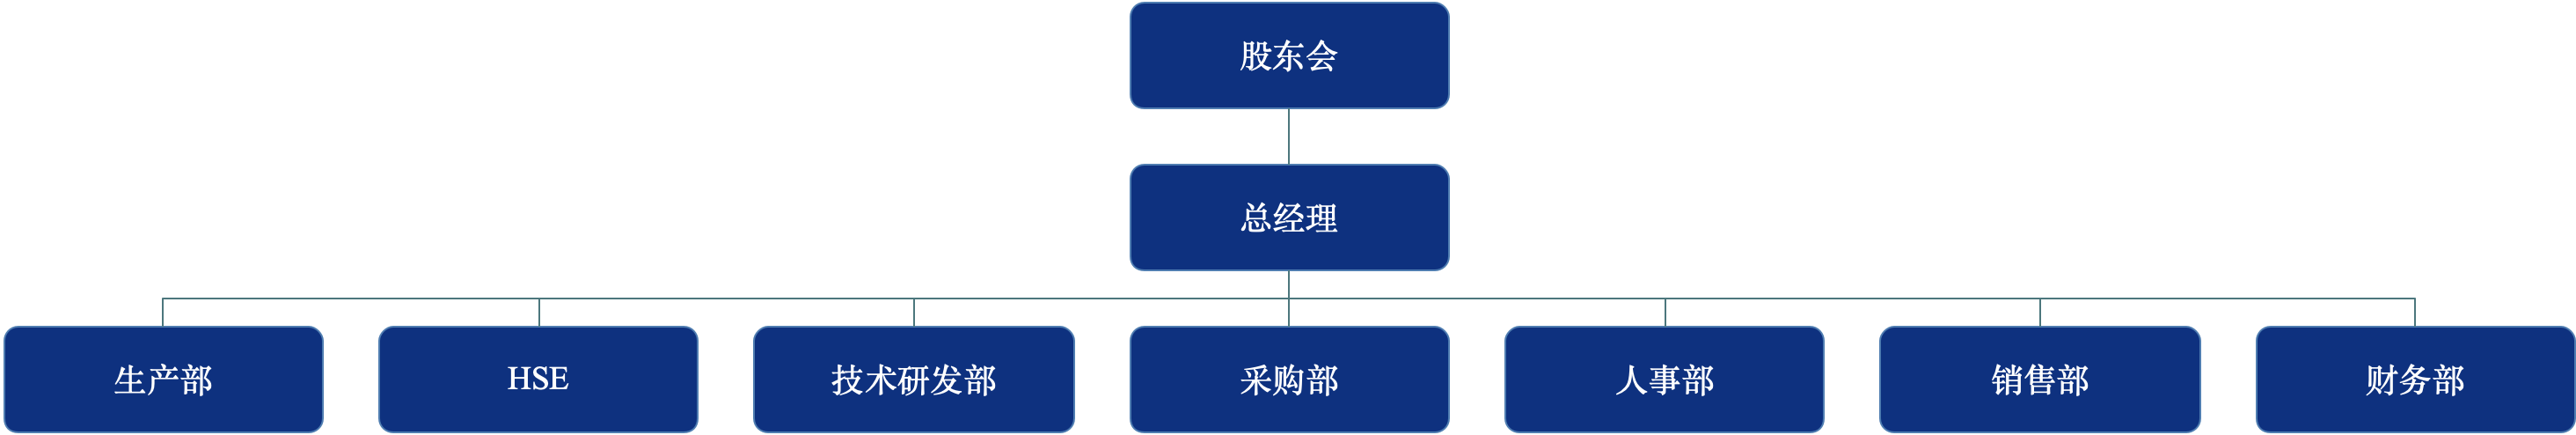 江苏英莱节能科技-组织架构